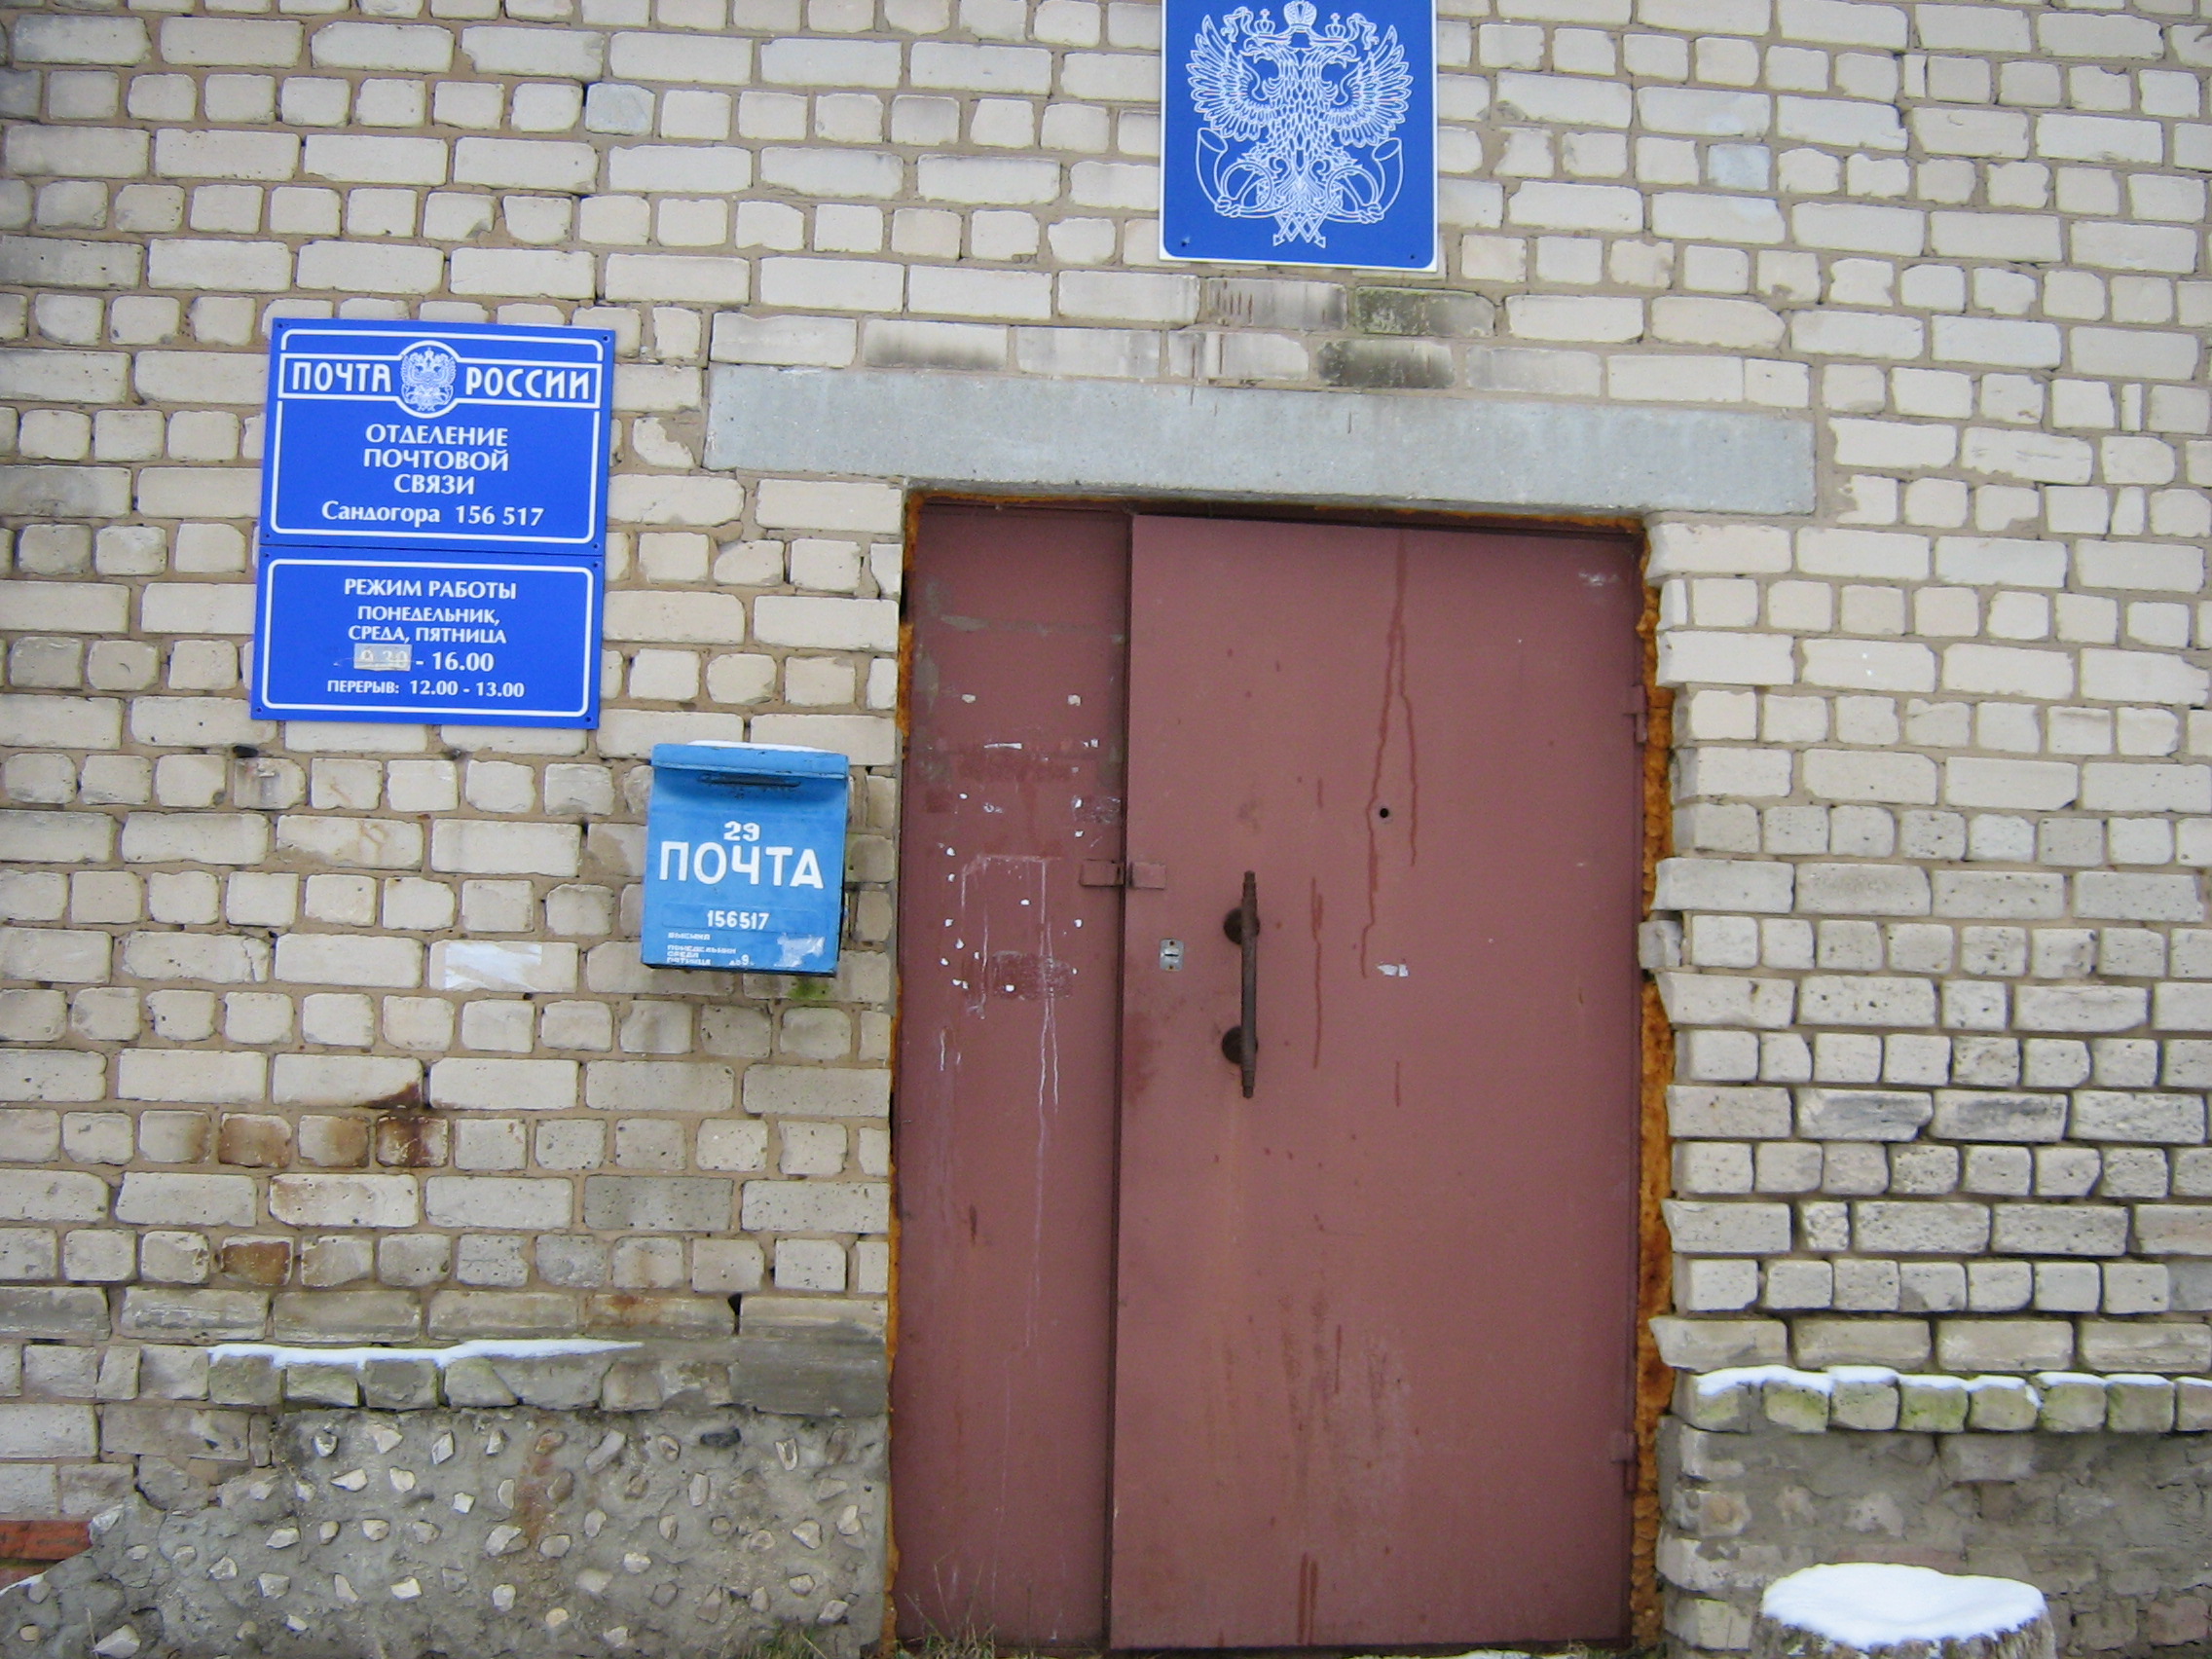 ВХОД, отделение почтовой связи 156517, Костромская обл., Костромской р-он, Сандогора